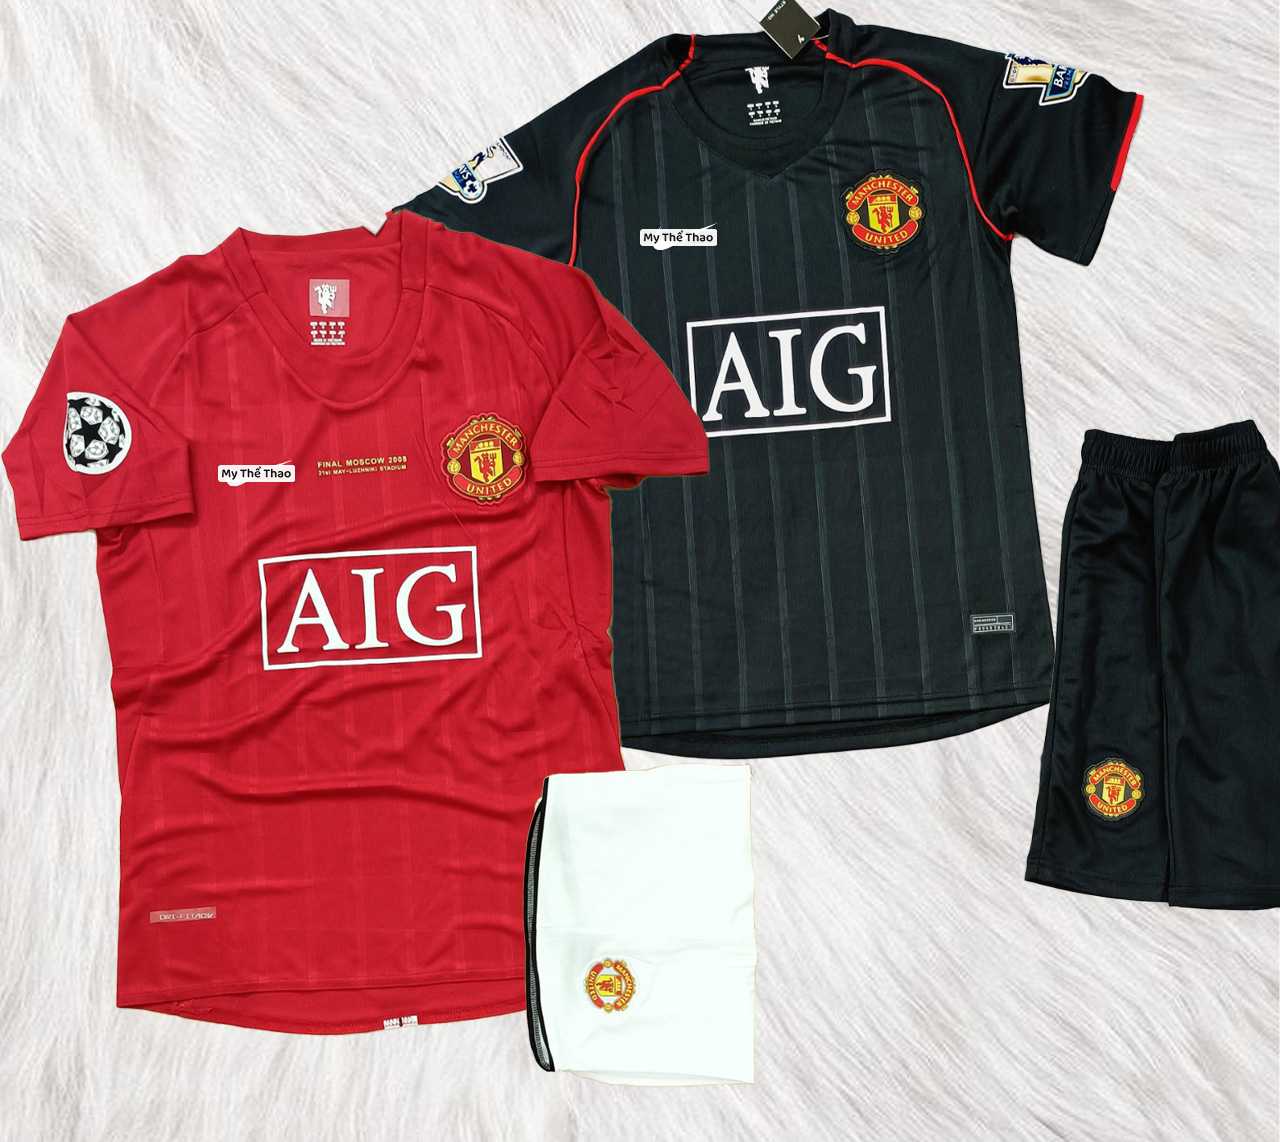 Bộ quần áo đá banh clb bóng đá manchester united mu manutd aig mùa 2007 2008 màu đen đỏ 1